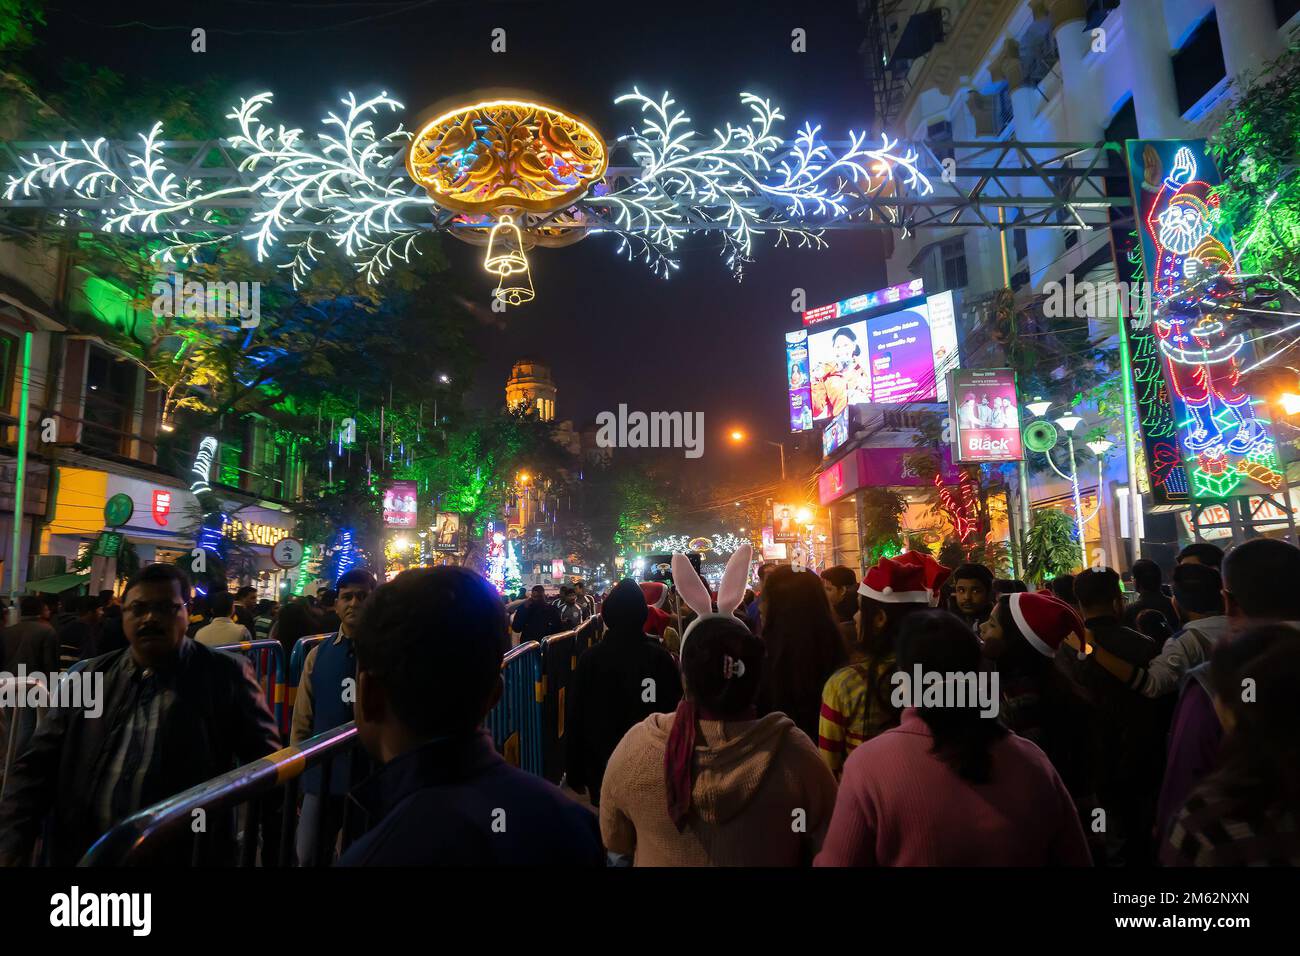 Kolkata, Bengala Occidental, India - 26.12.2018 : Los jóvenes se divierten en la calle del parque iluminado y decorado con luces y festivo fin de año Foto de stock